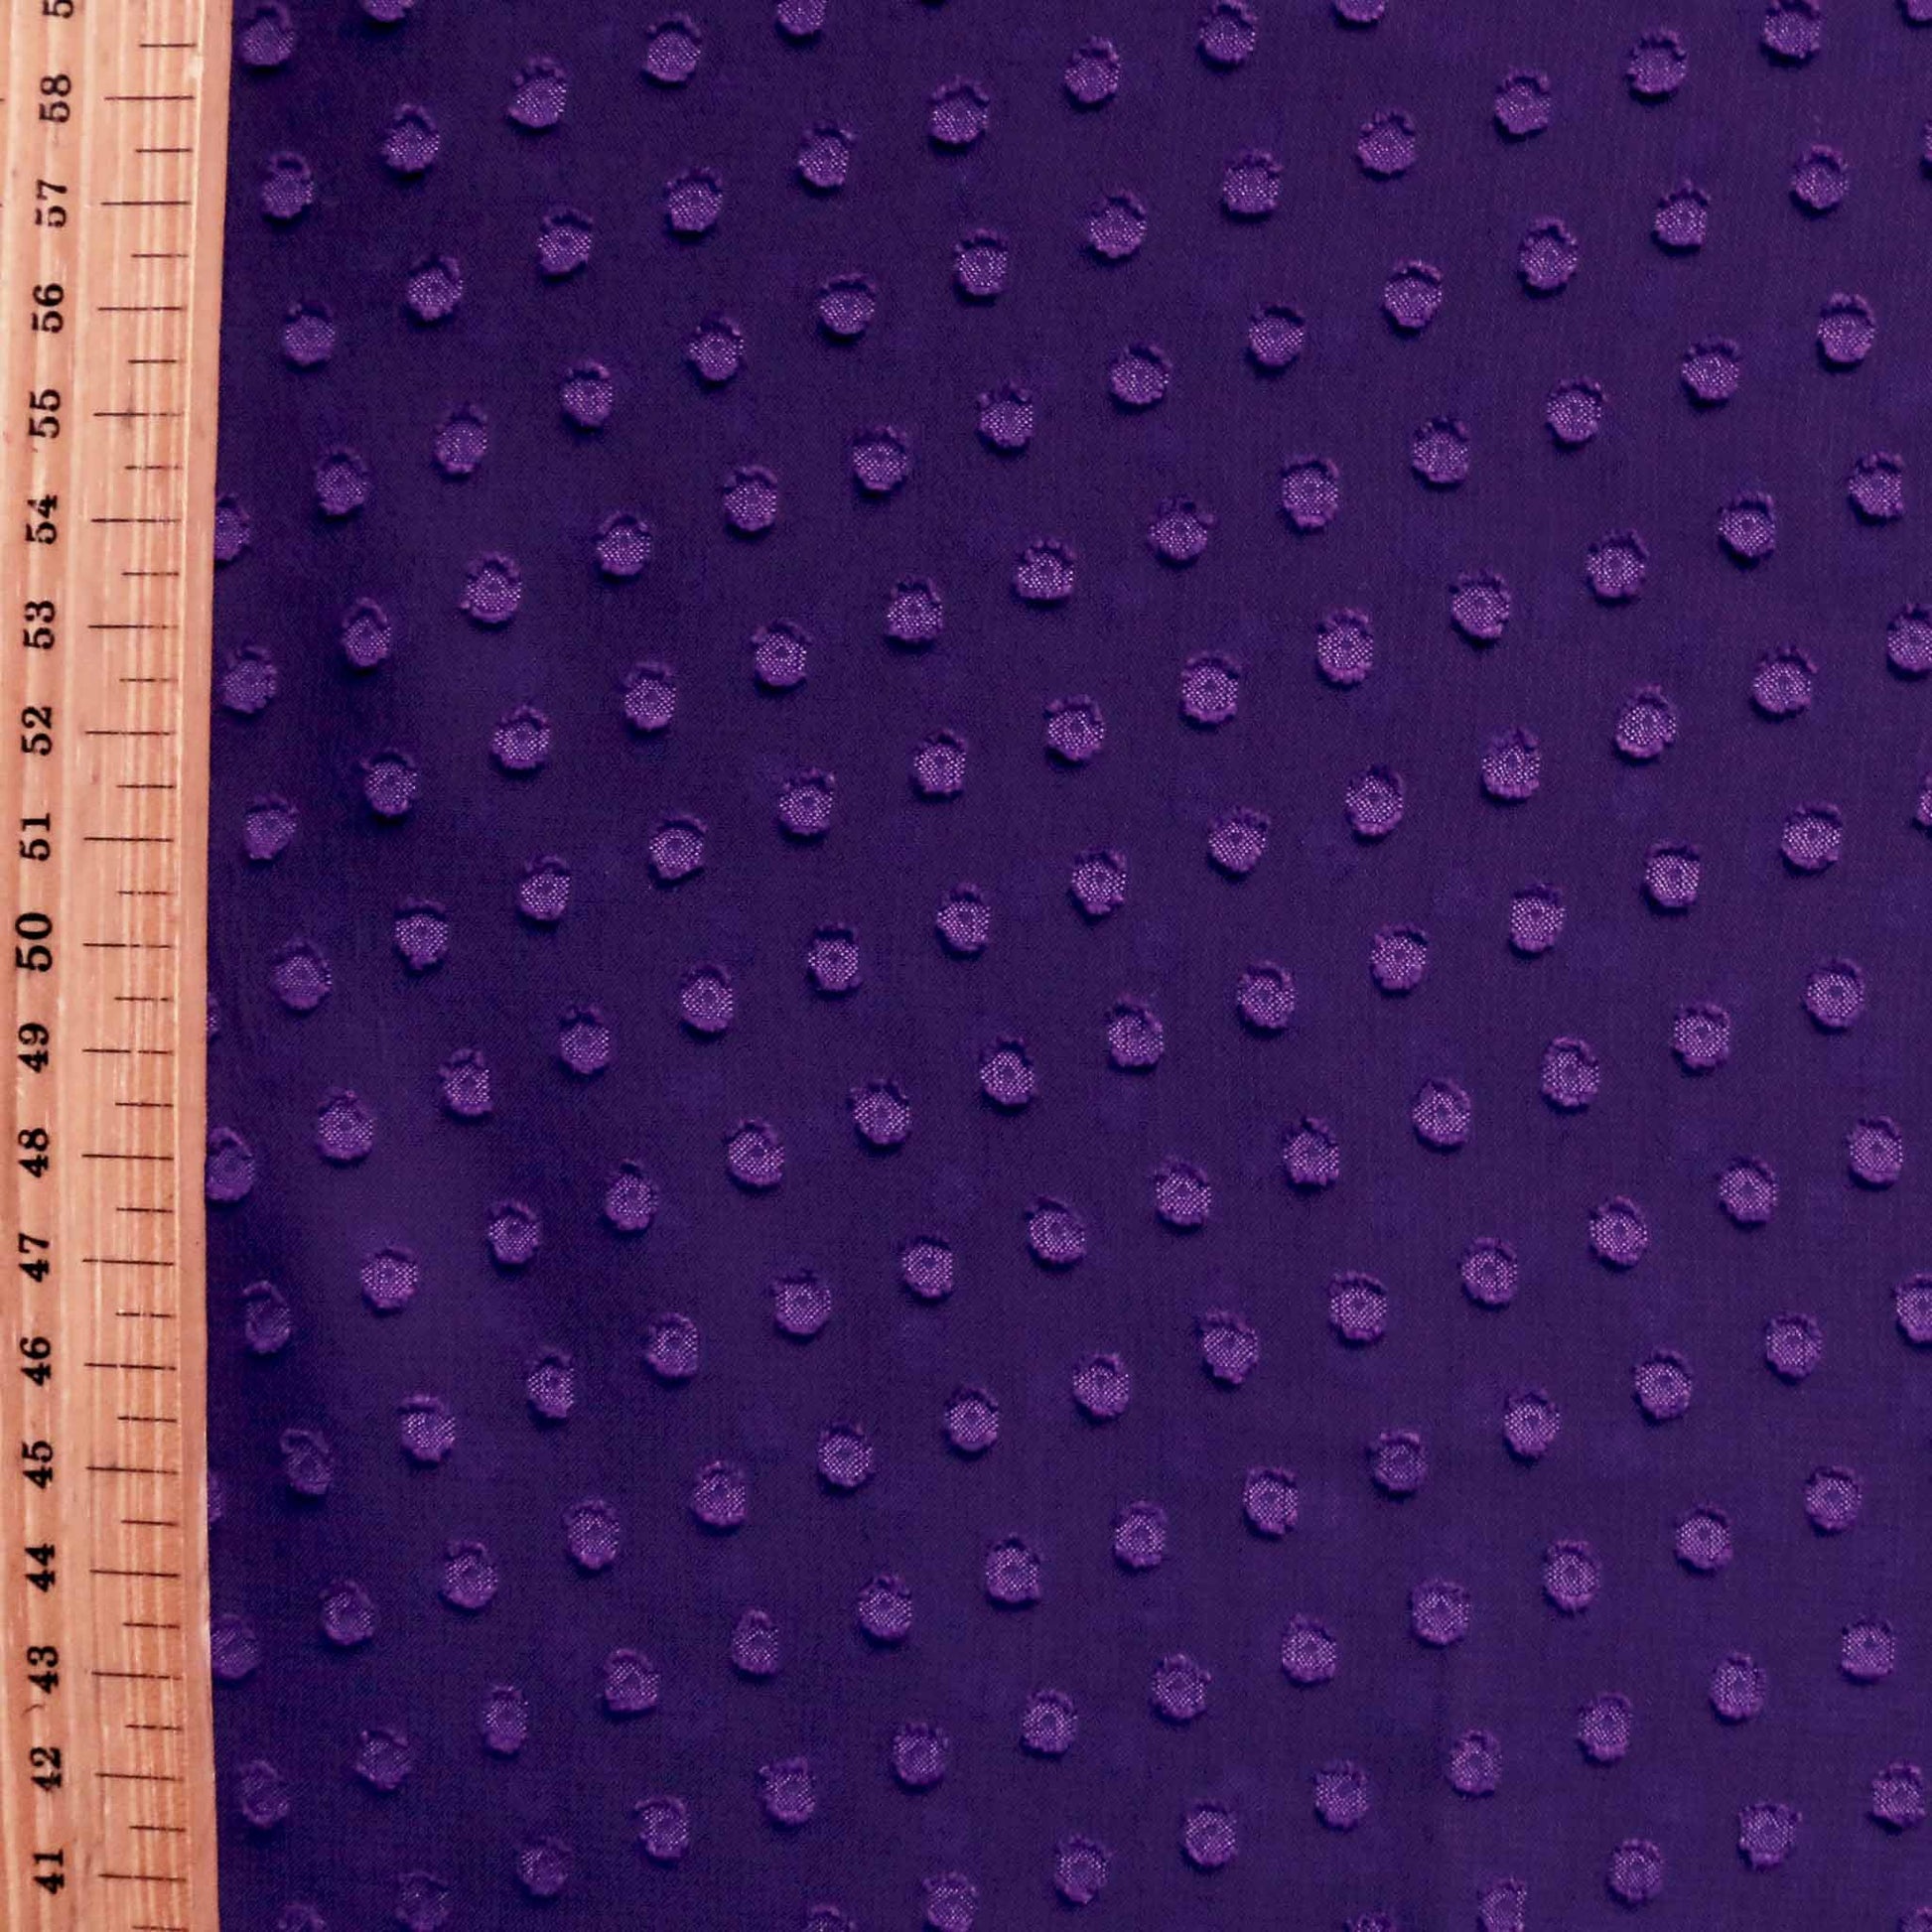 metre swiss clip jacquard polka dot chiffon dressmaking fabric in purple